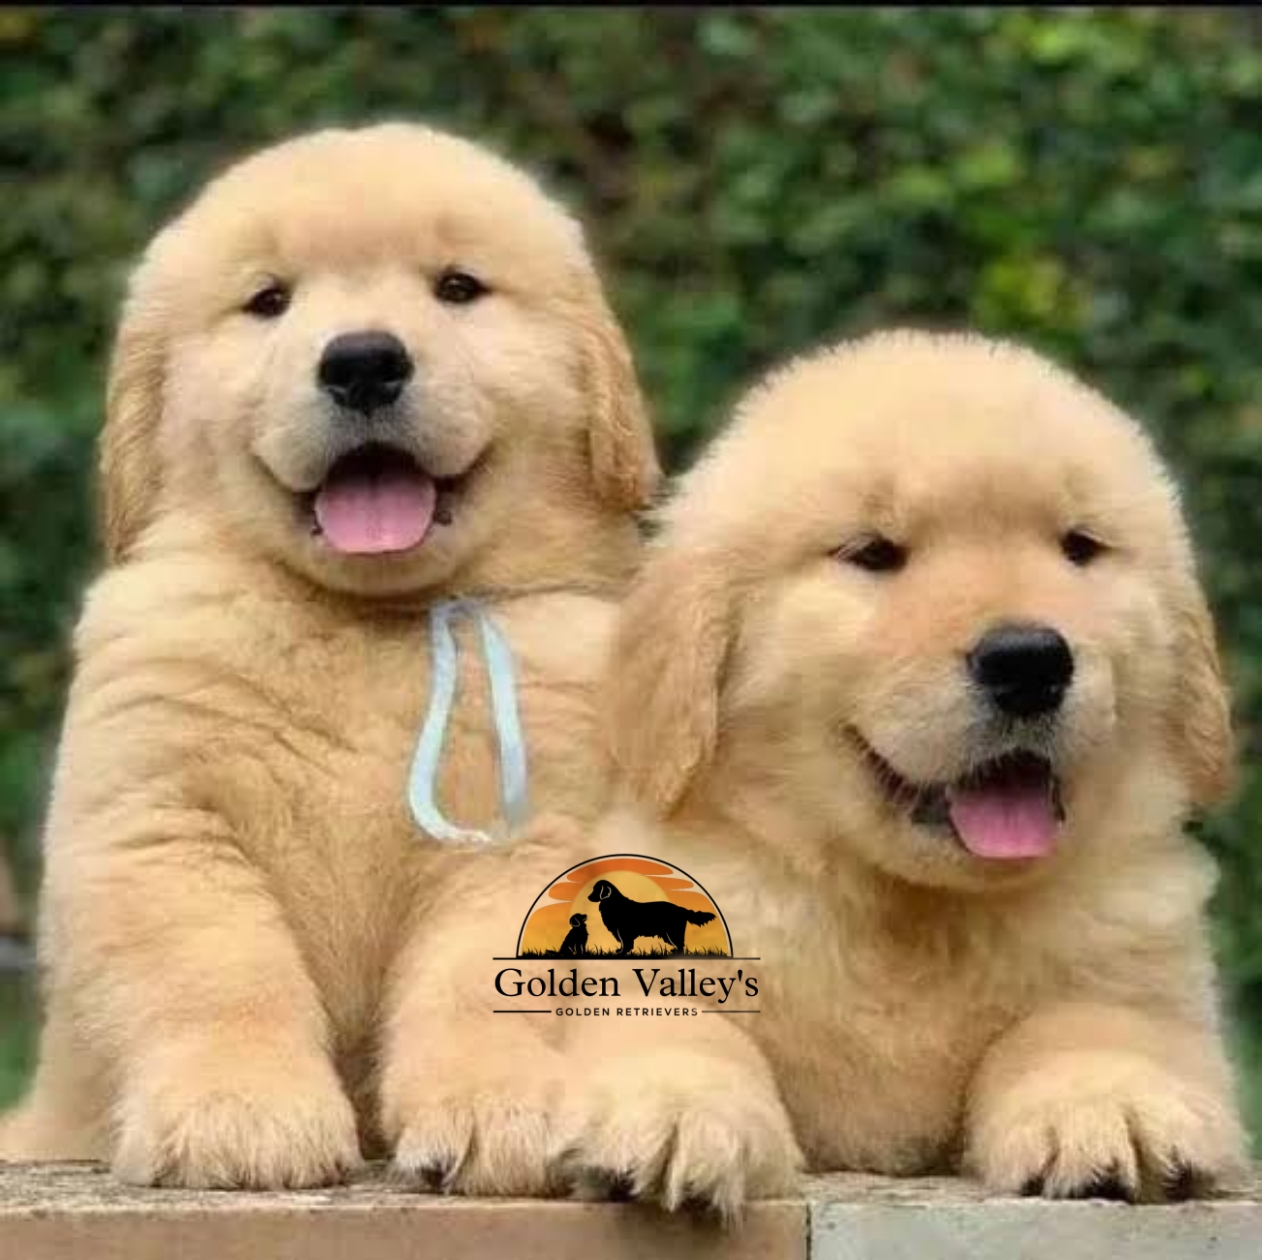 Golden Retriever puppies from Pune. Breeder: Golden Valley Kennel